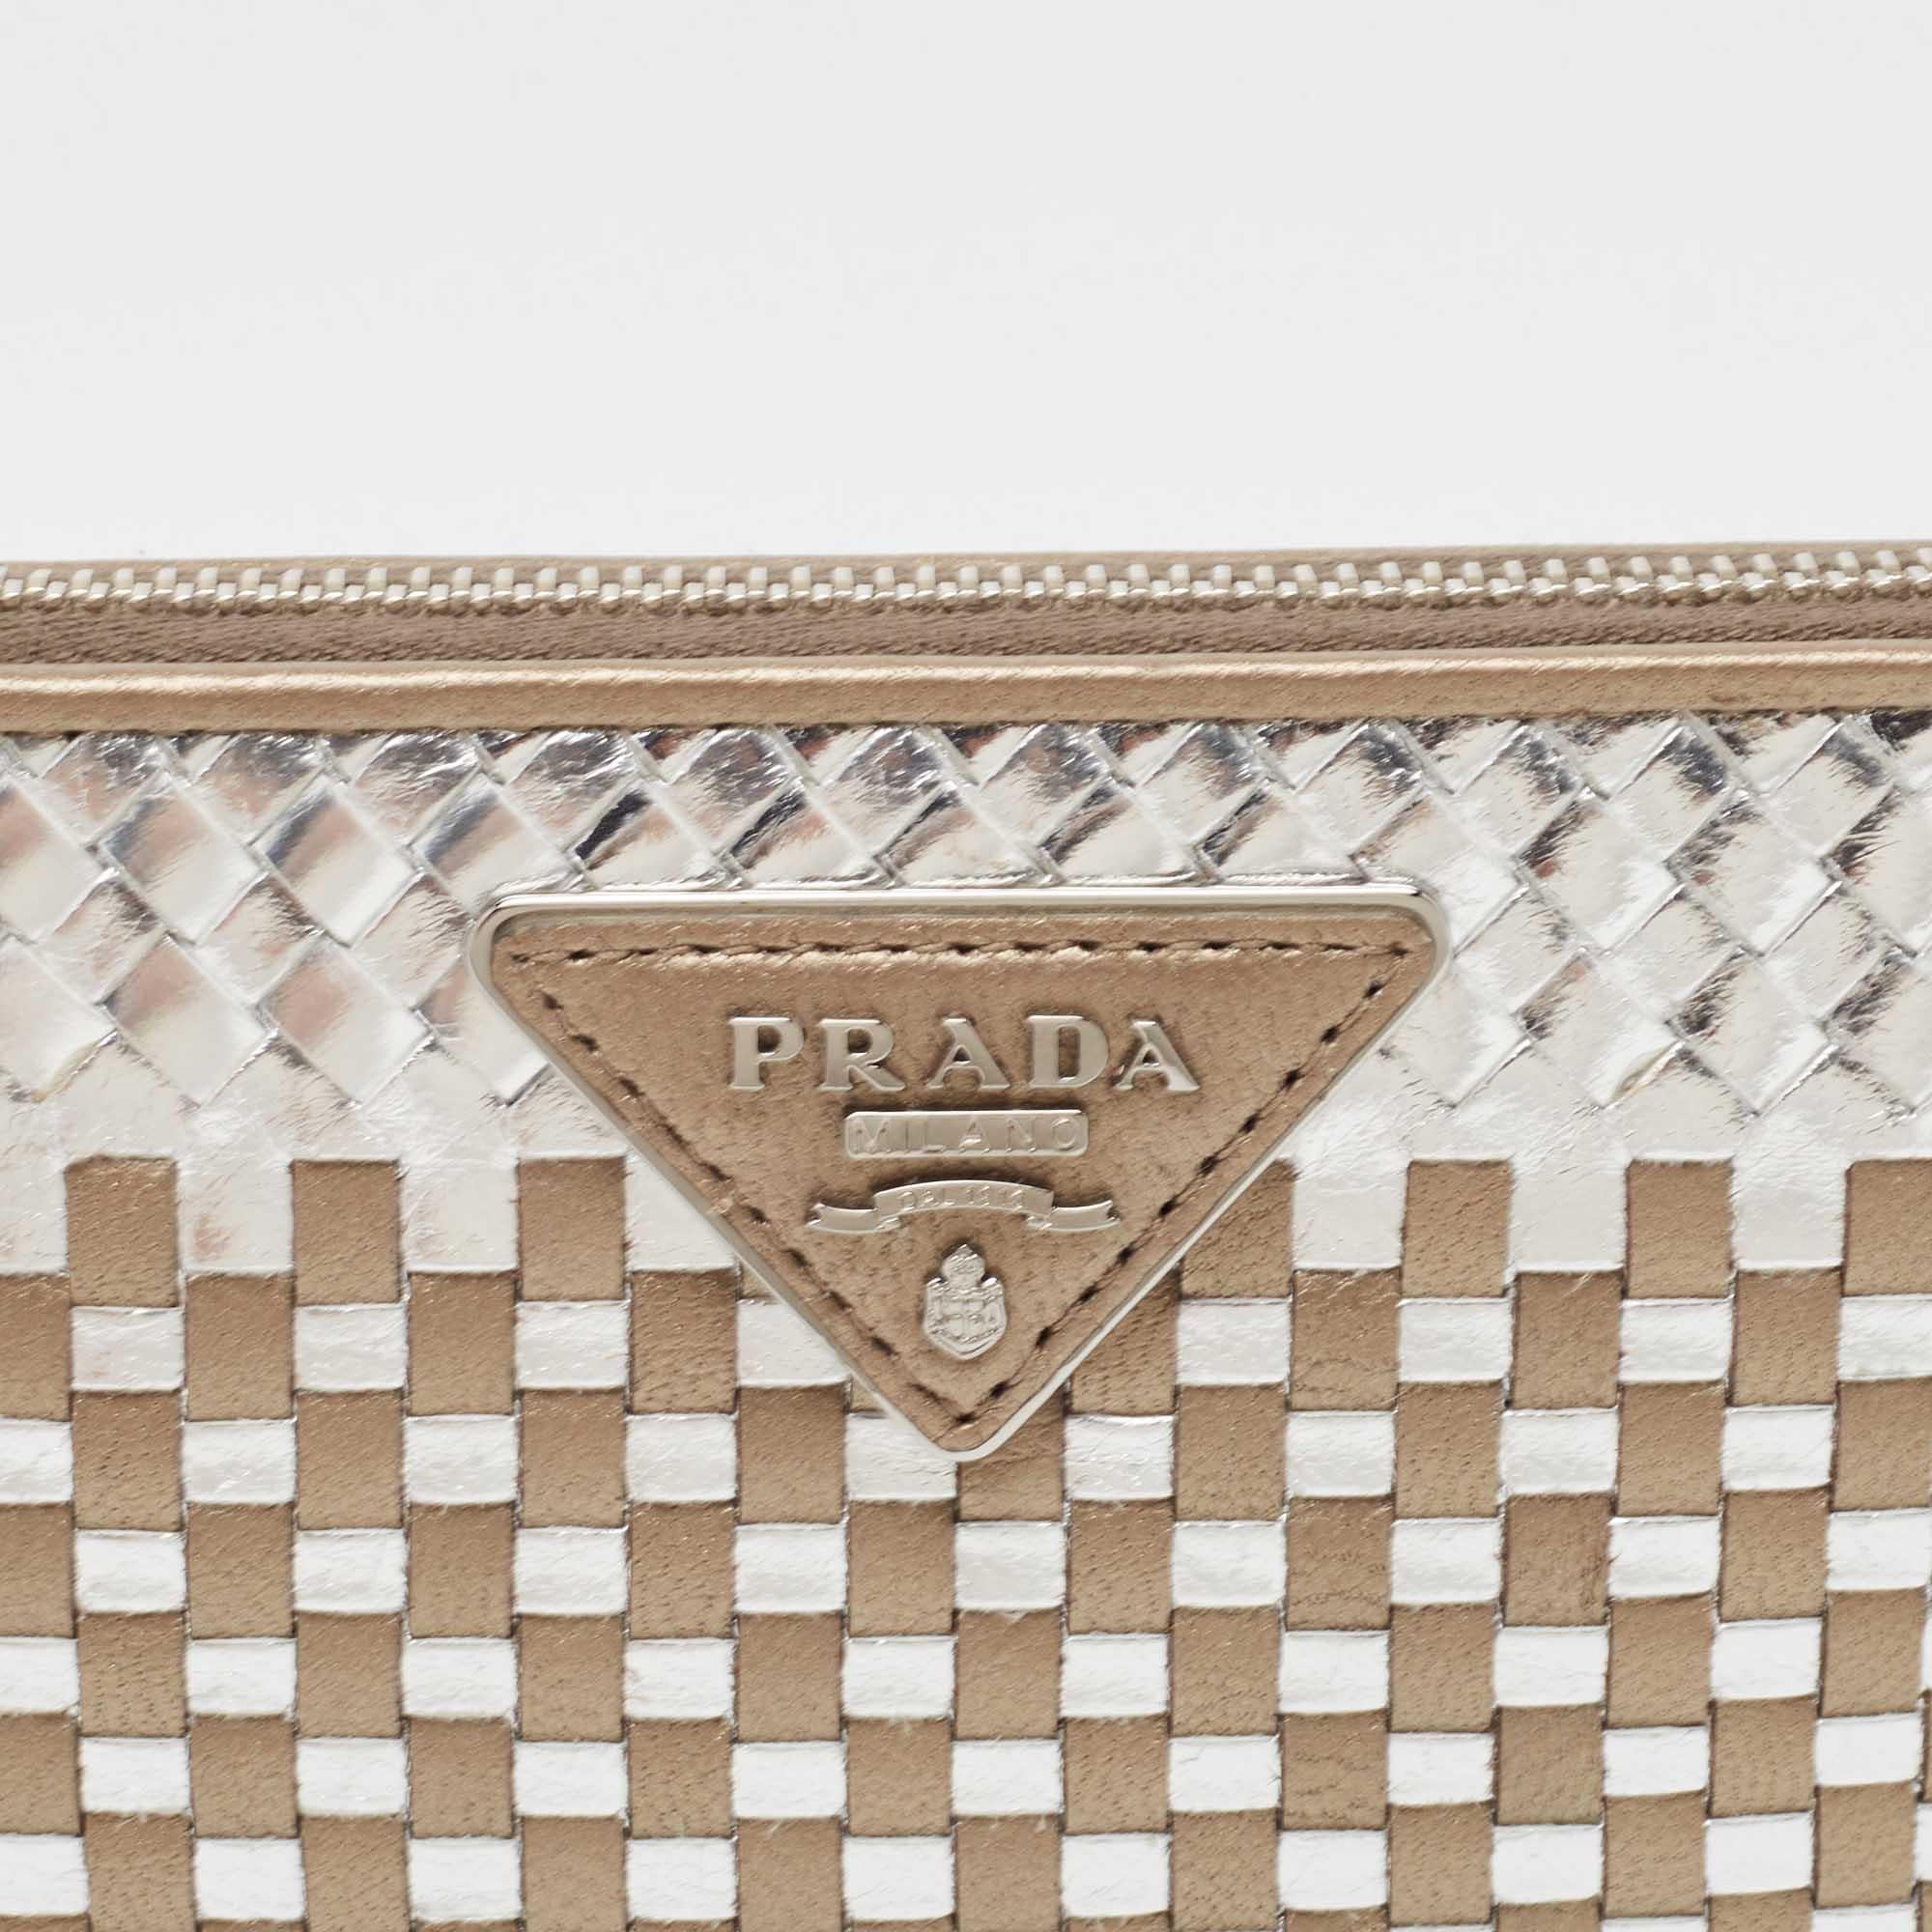 Ce portefeuille Prada est un accessoire idéal pour tous les jours. Il est fabriqué à partir de matériaux de qualité à l'extérieur et comporte un intérieur compartimenté.

